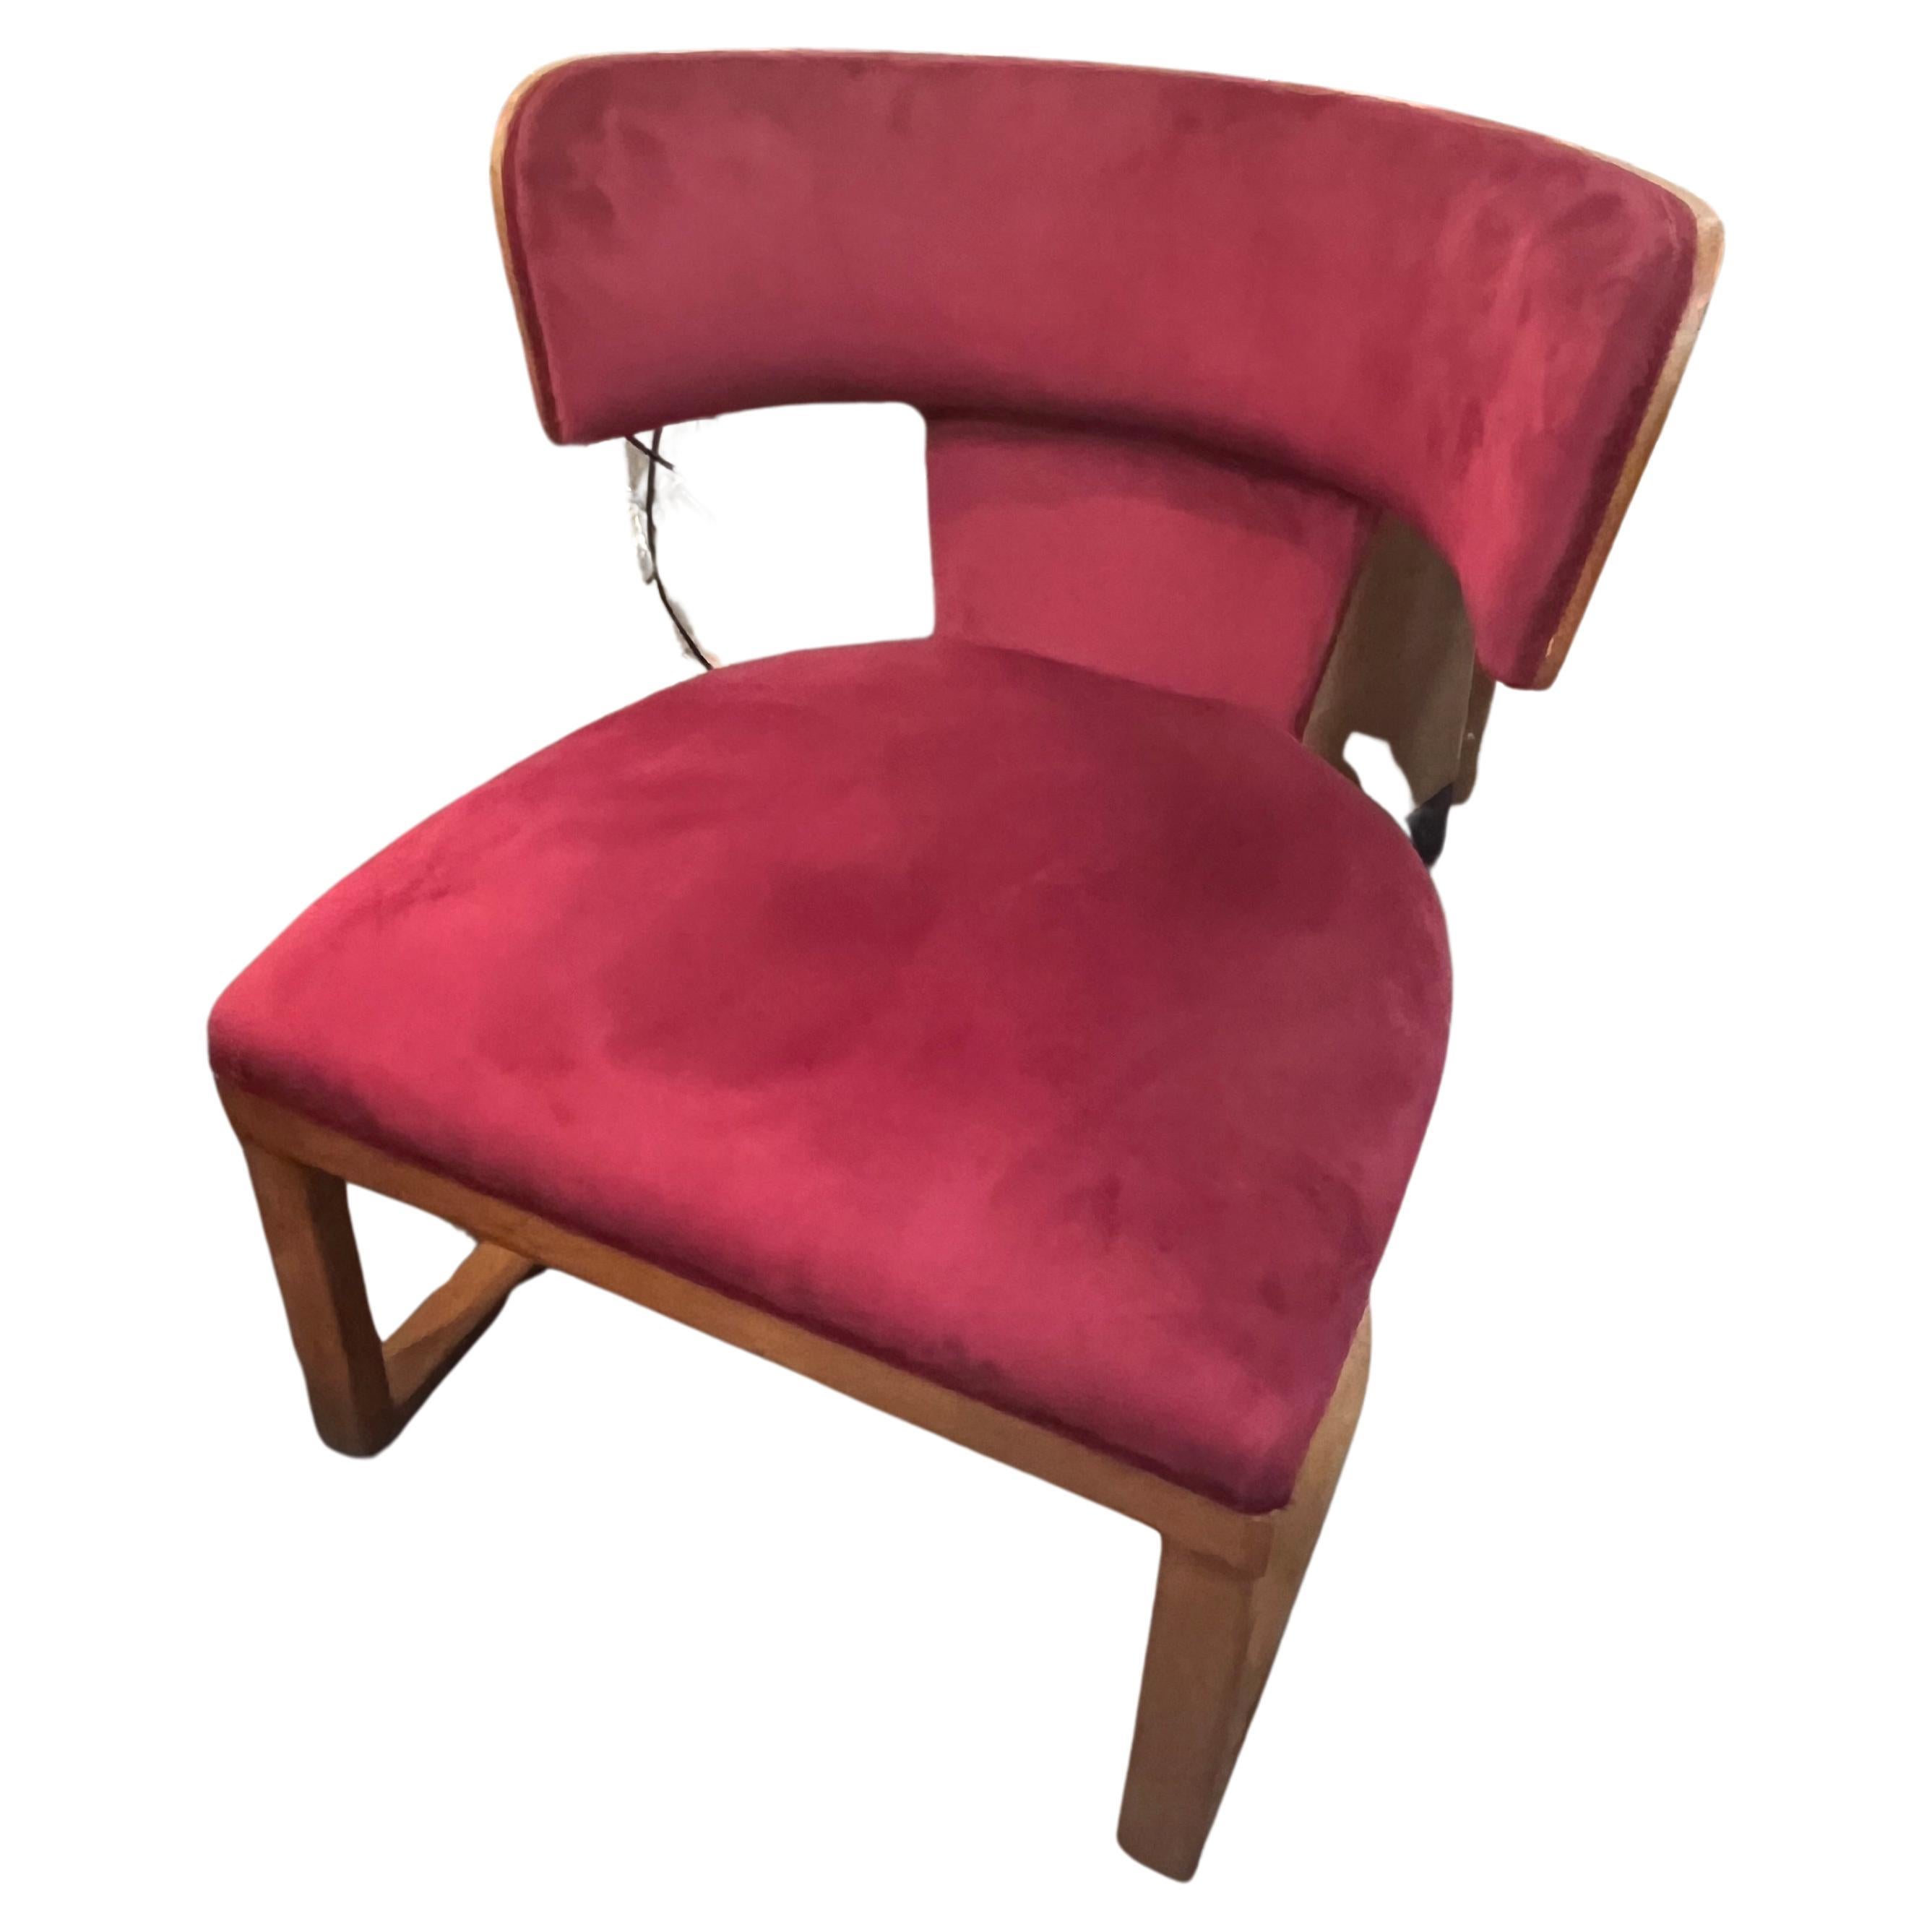 Seltener Art-Deco-Sessel von Ernesto Lapadula mit Nussbaumholzrahmen und fuchsiafarbenem Samt.
Der von Ernesto Lapadula entworfene Sessel aus der italienischen Art Déco-Periode, um 1930. 
hat einen Rahmen aus Nussbaumholz mit einer geschwungenen